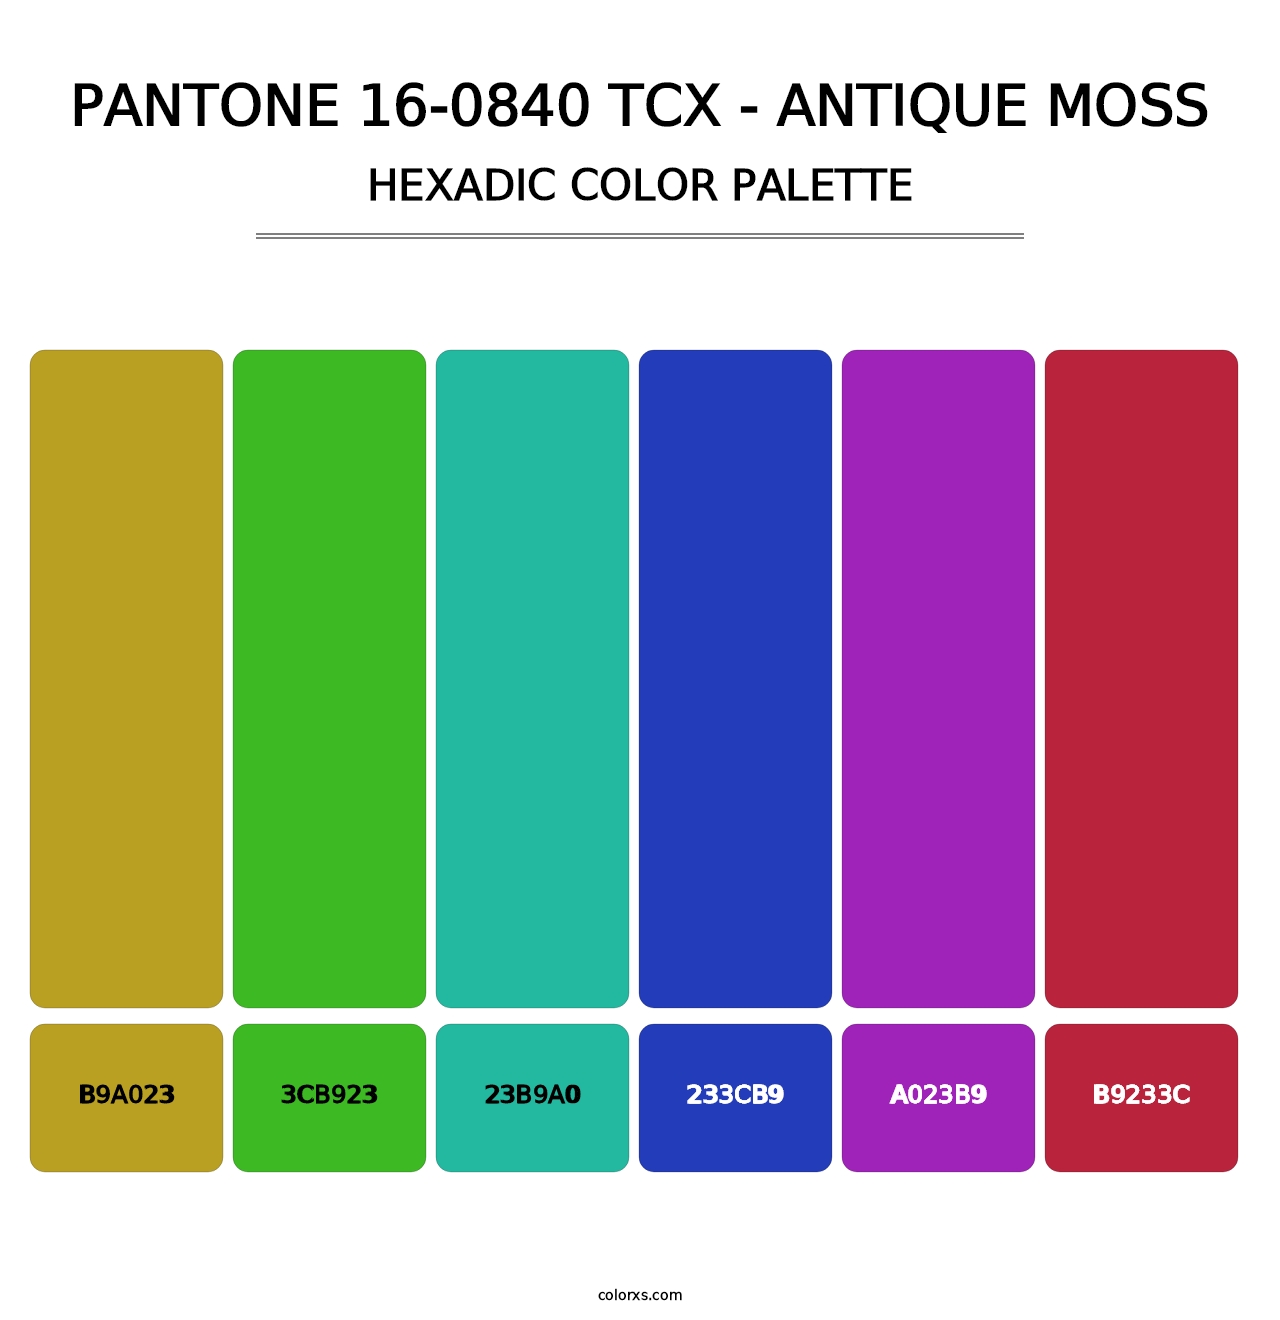 PANTONE 16-0840 TCX - Antique Moss - Hexadic Color Palette